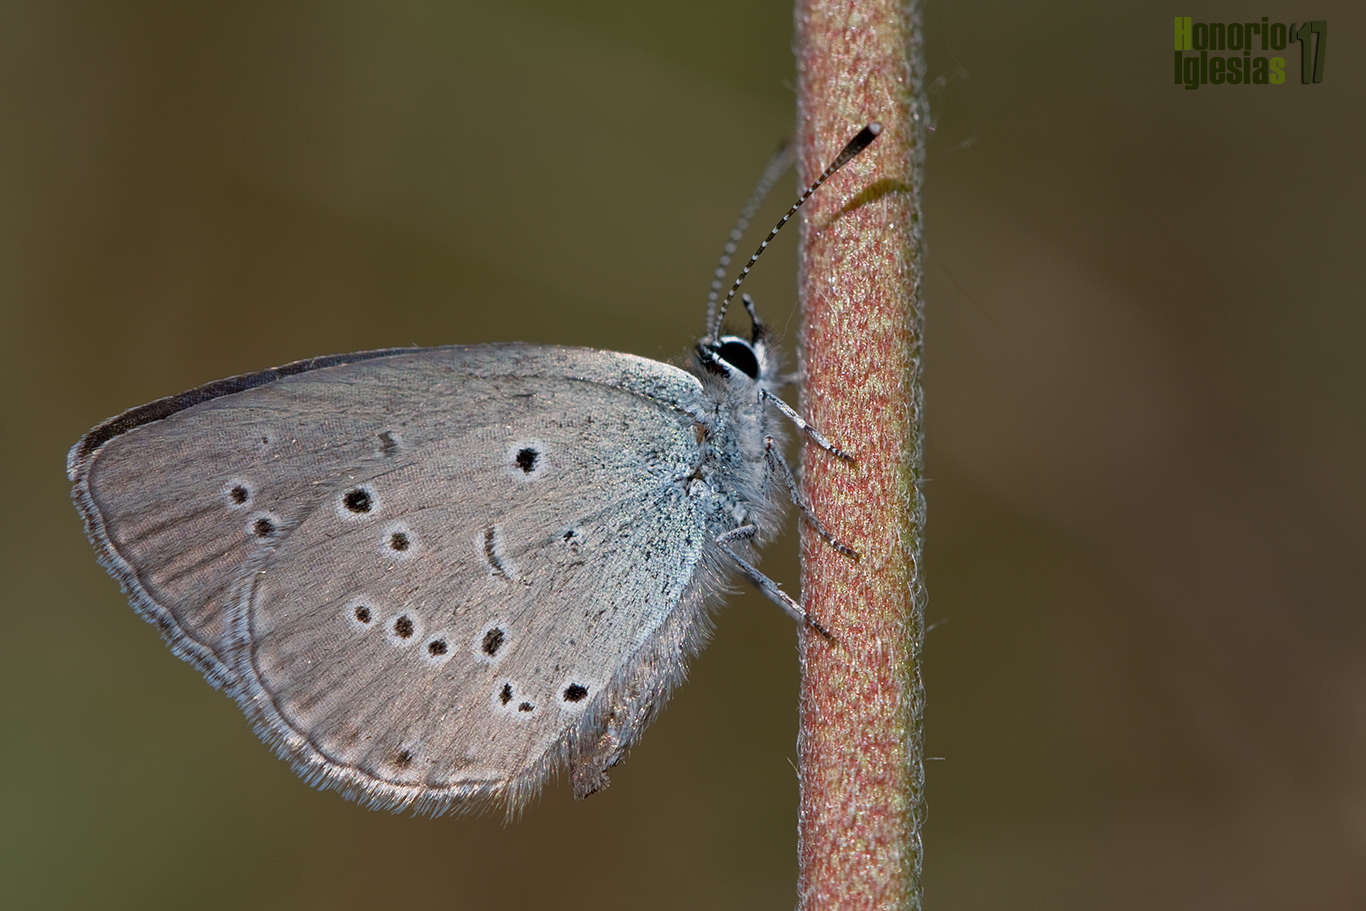 Ejemplar de mariposa duende menor u oscuro (Cupido minimus) , es una de las especies de mariposas diurnas más pequeñas de la sierra de Guadarrama.